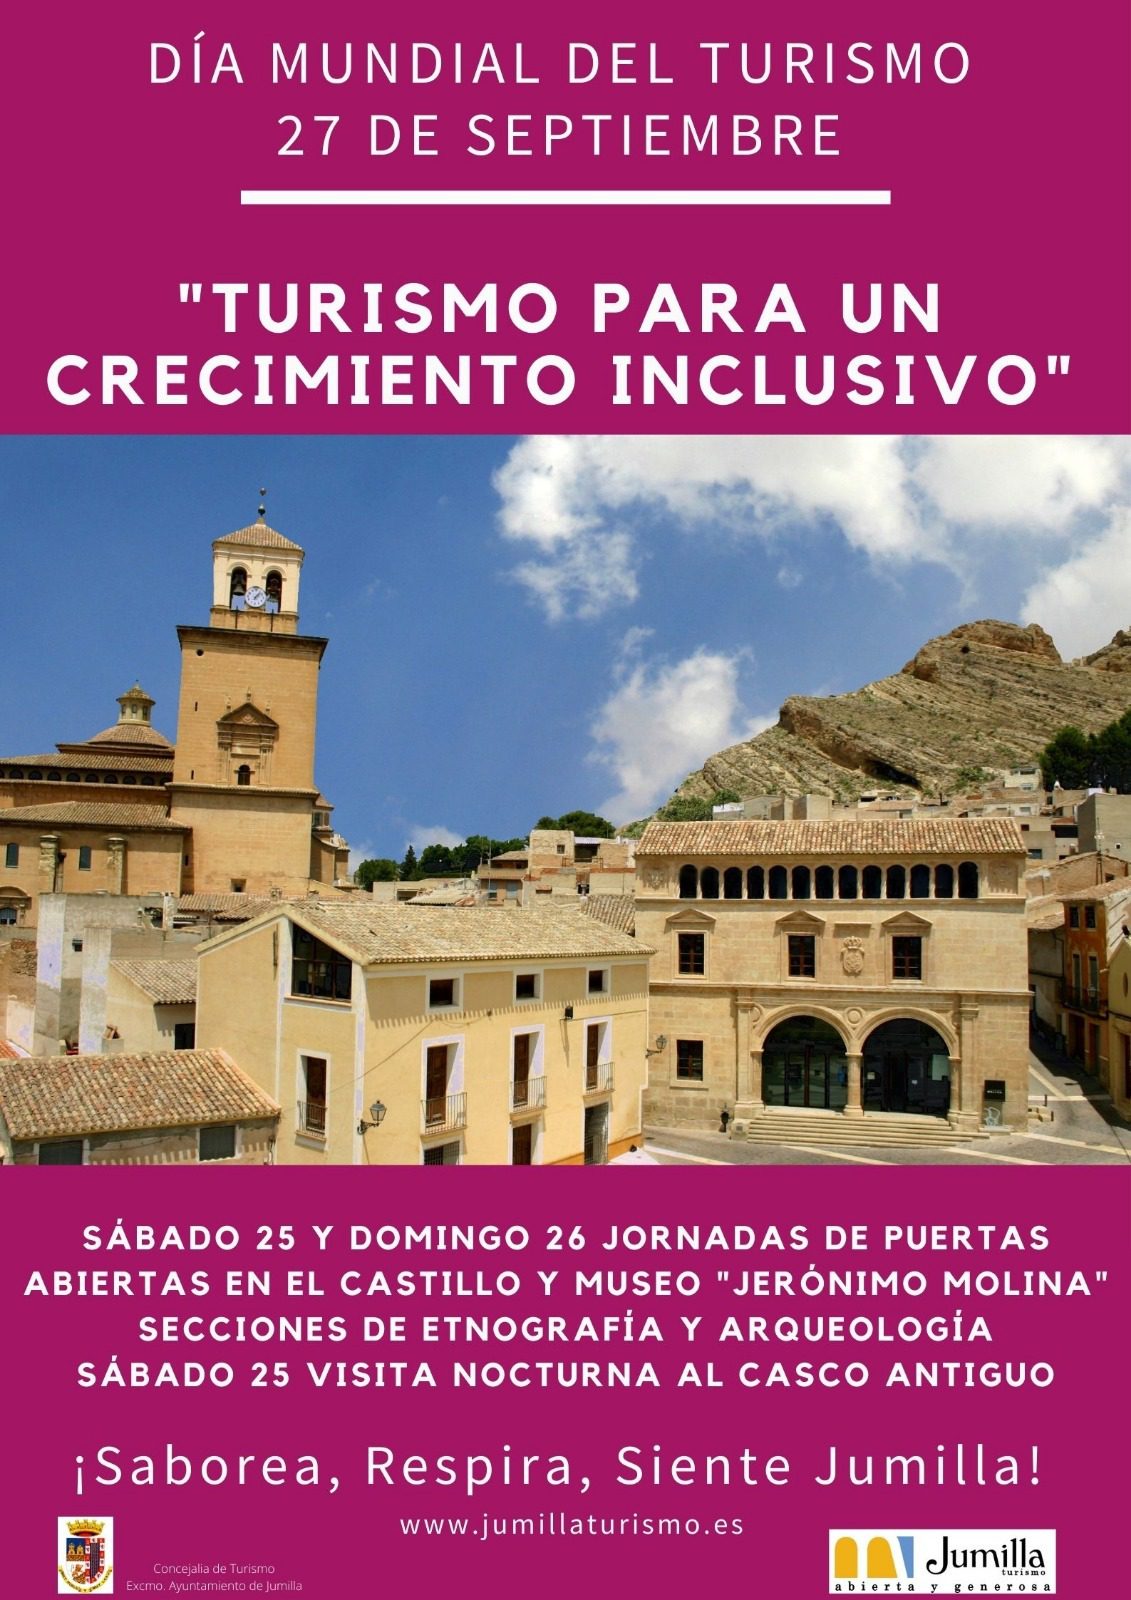 Jumilla celebra el Día Mundial del Turismo con puertas abiertas en el Castillo, museos y visita nocturna al Casco Antiguo